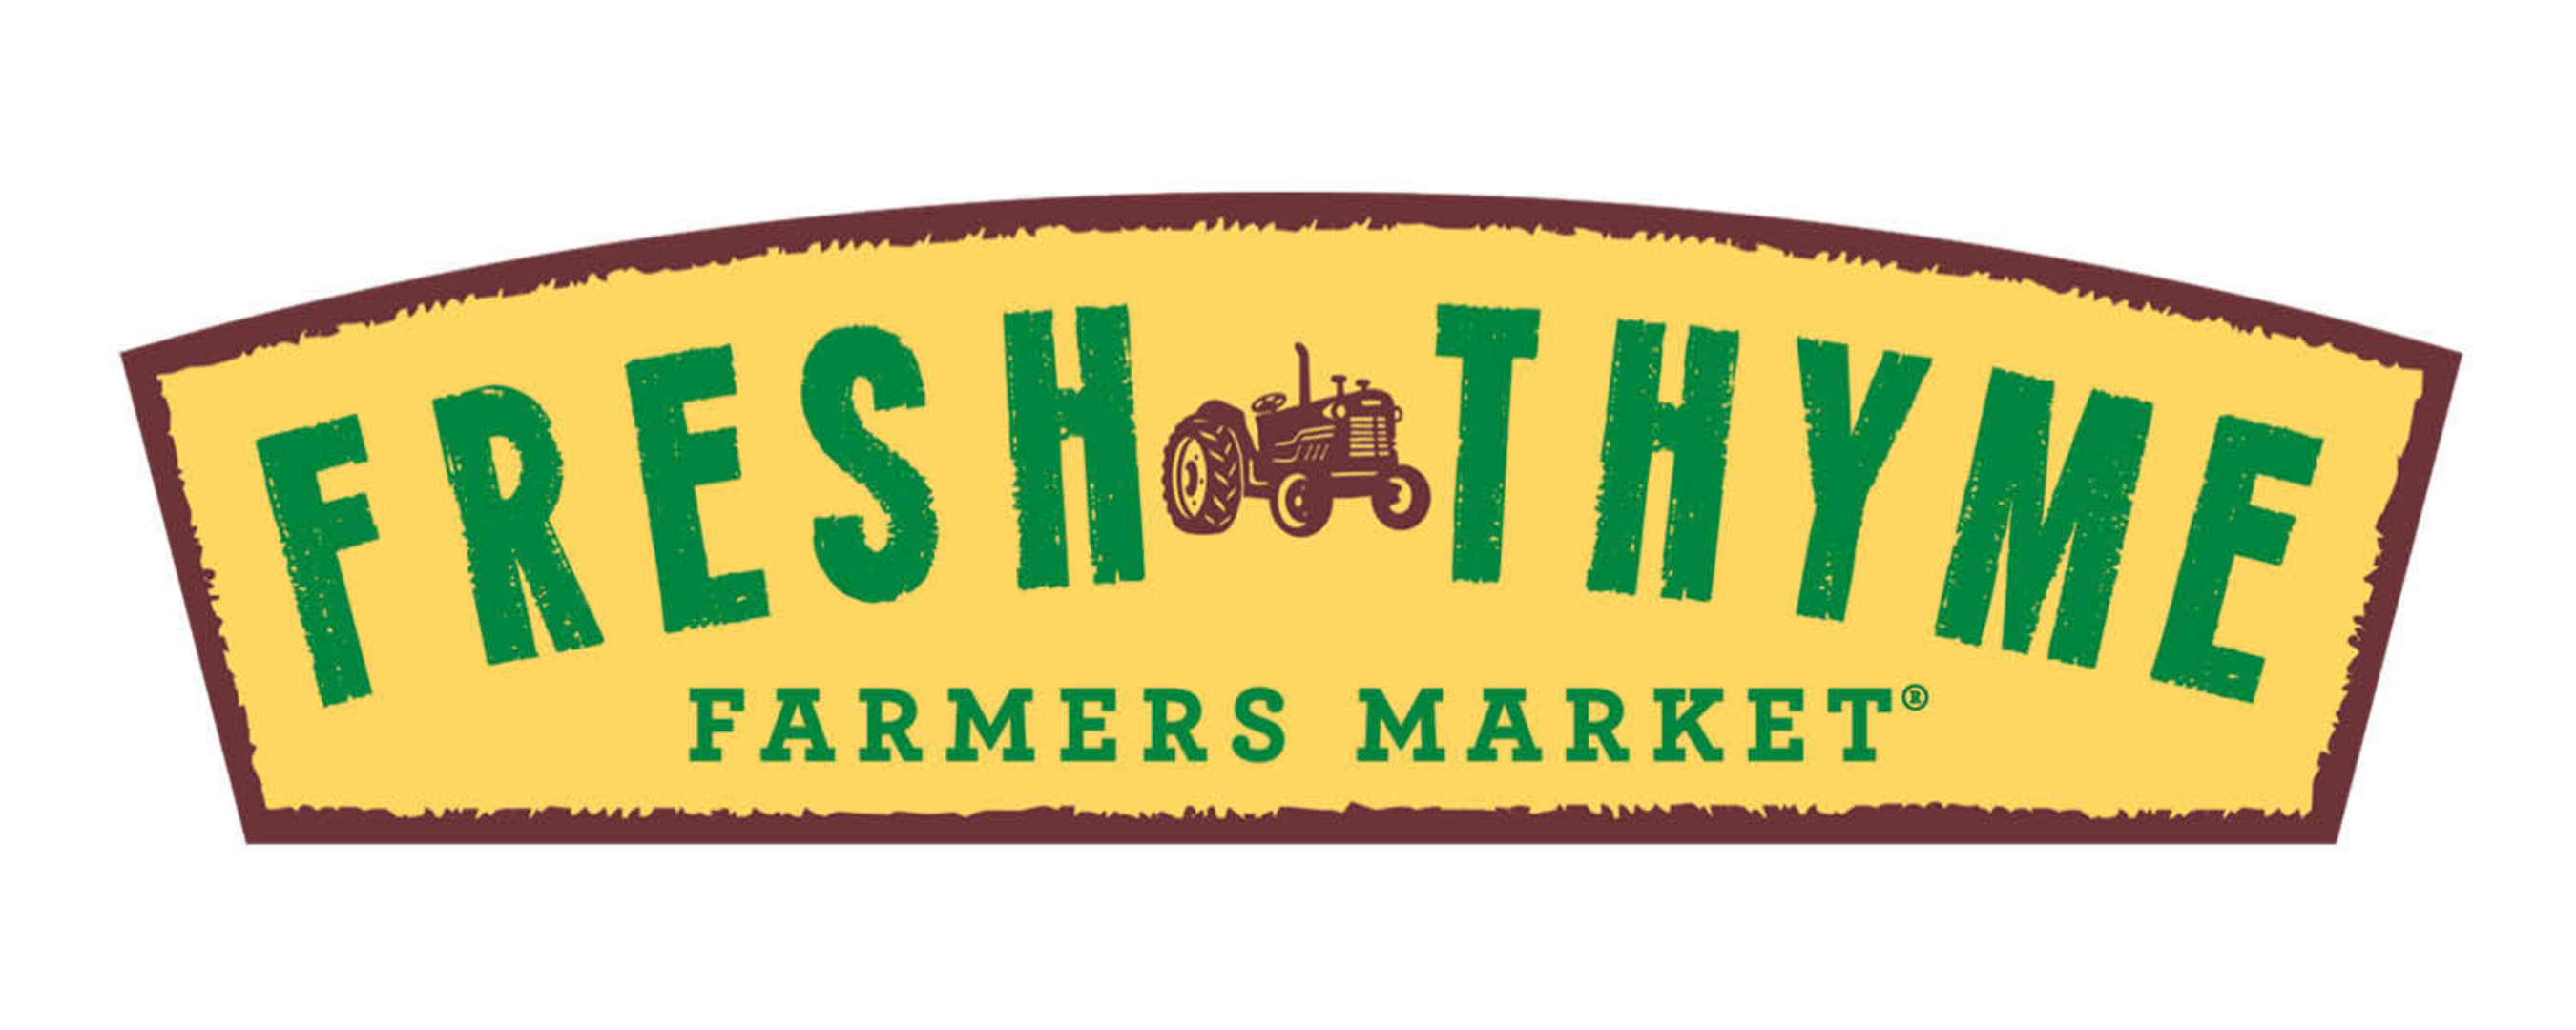 Fresh Thyme Farmers Markets logo. (PRNewsFoto/Fresh Thyme Farmers Markets)